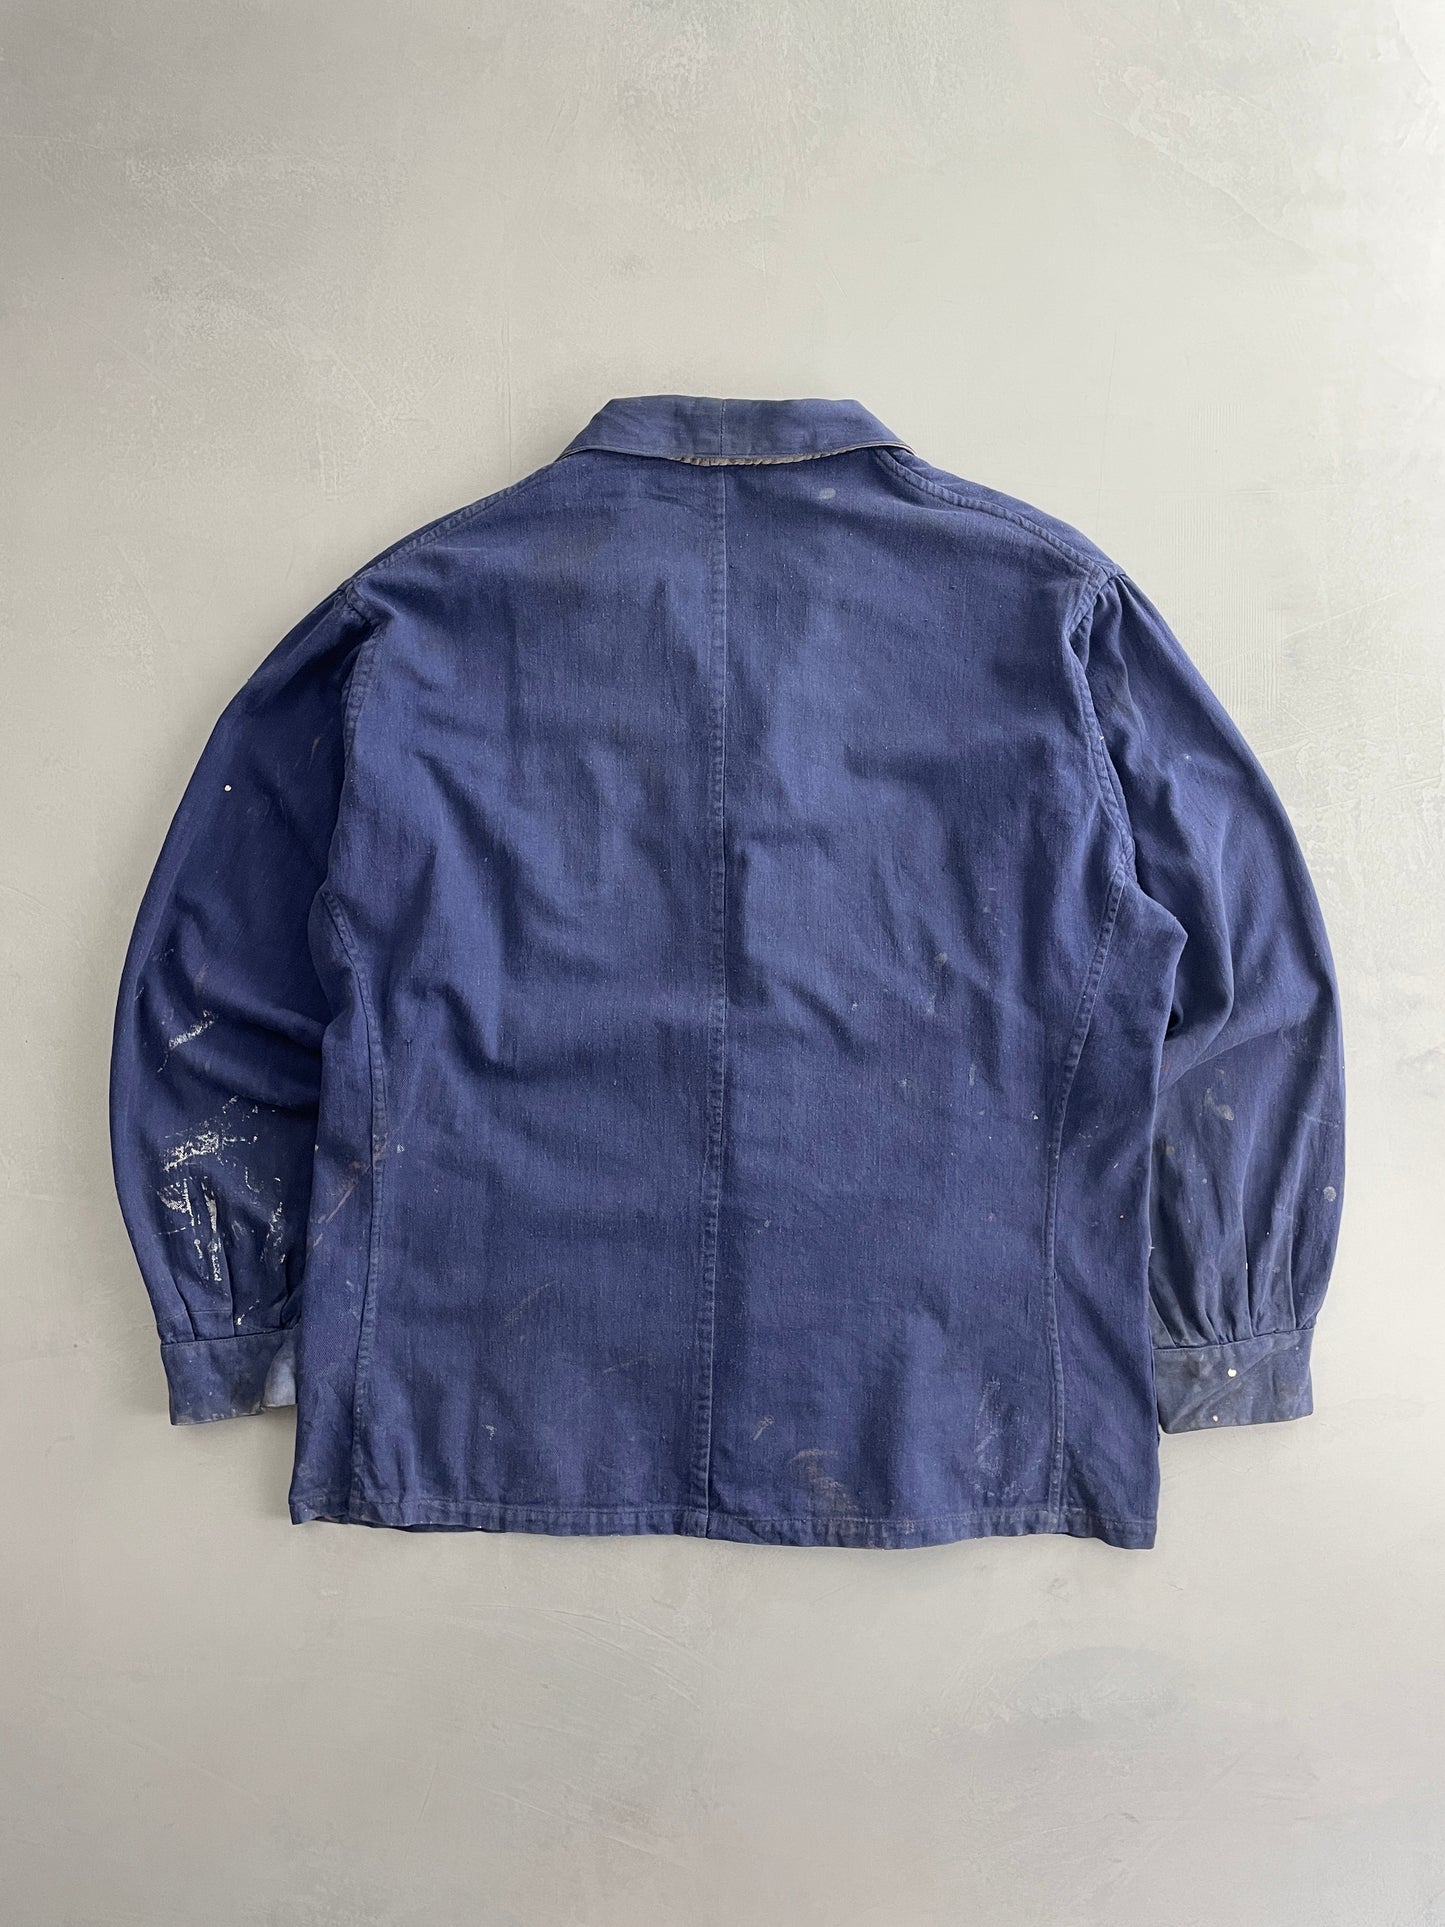 Thrashed Euro Chore Jacket [XL]